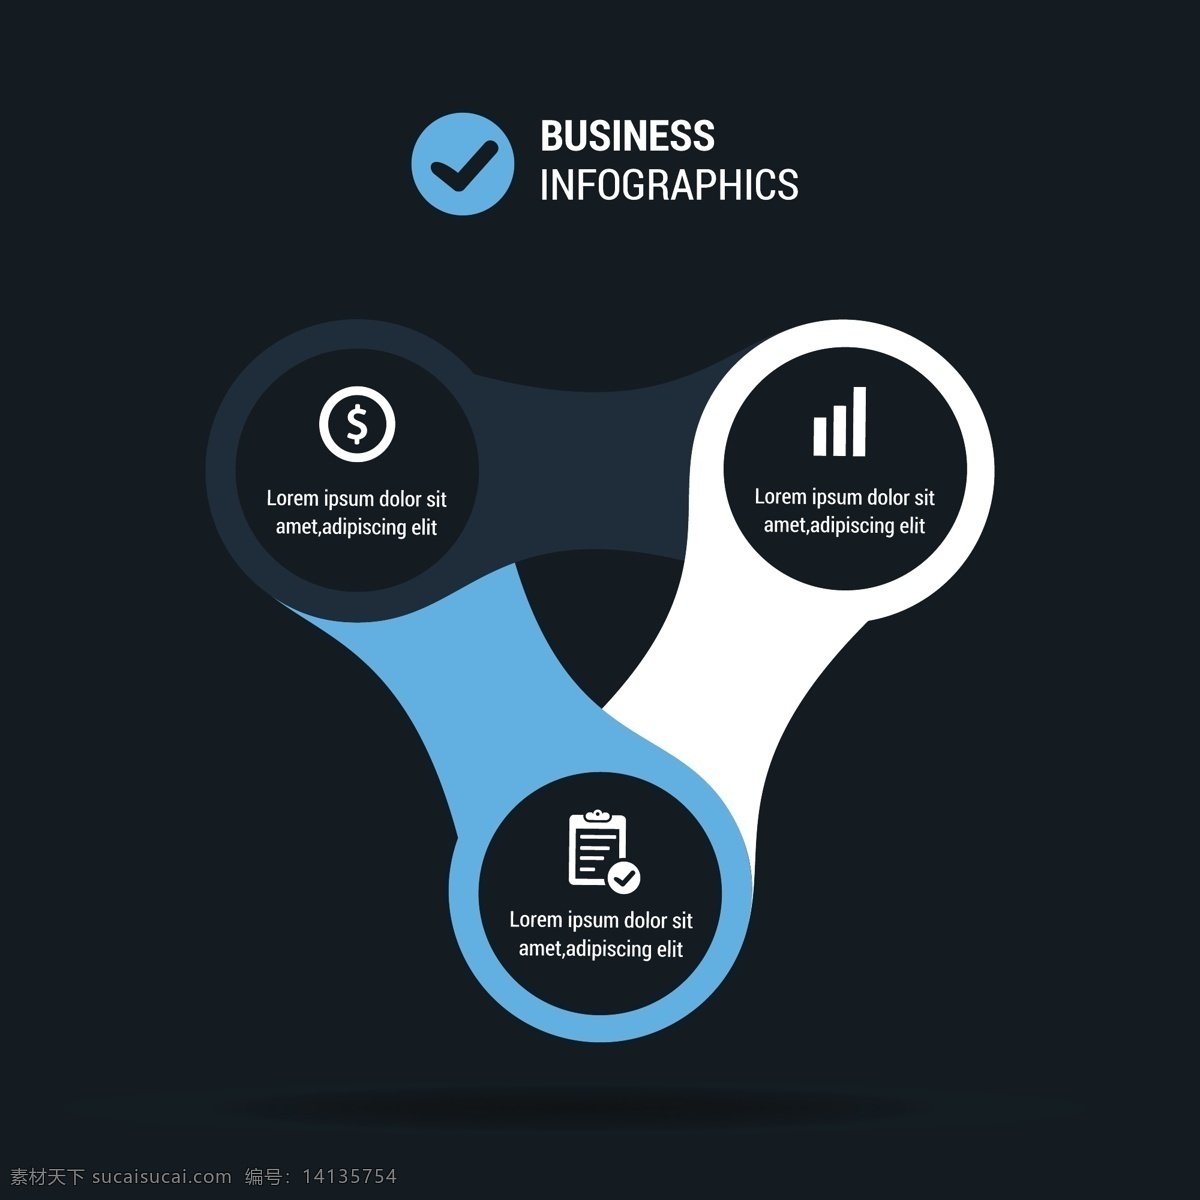 商业图表模板 图表 业务模板 图形 数据 信息 信息图表元素 元素 符号 信息图形 商业图表 图表模板 图形元素 统计 青色 天蓝色